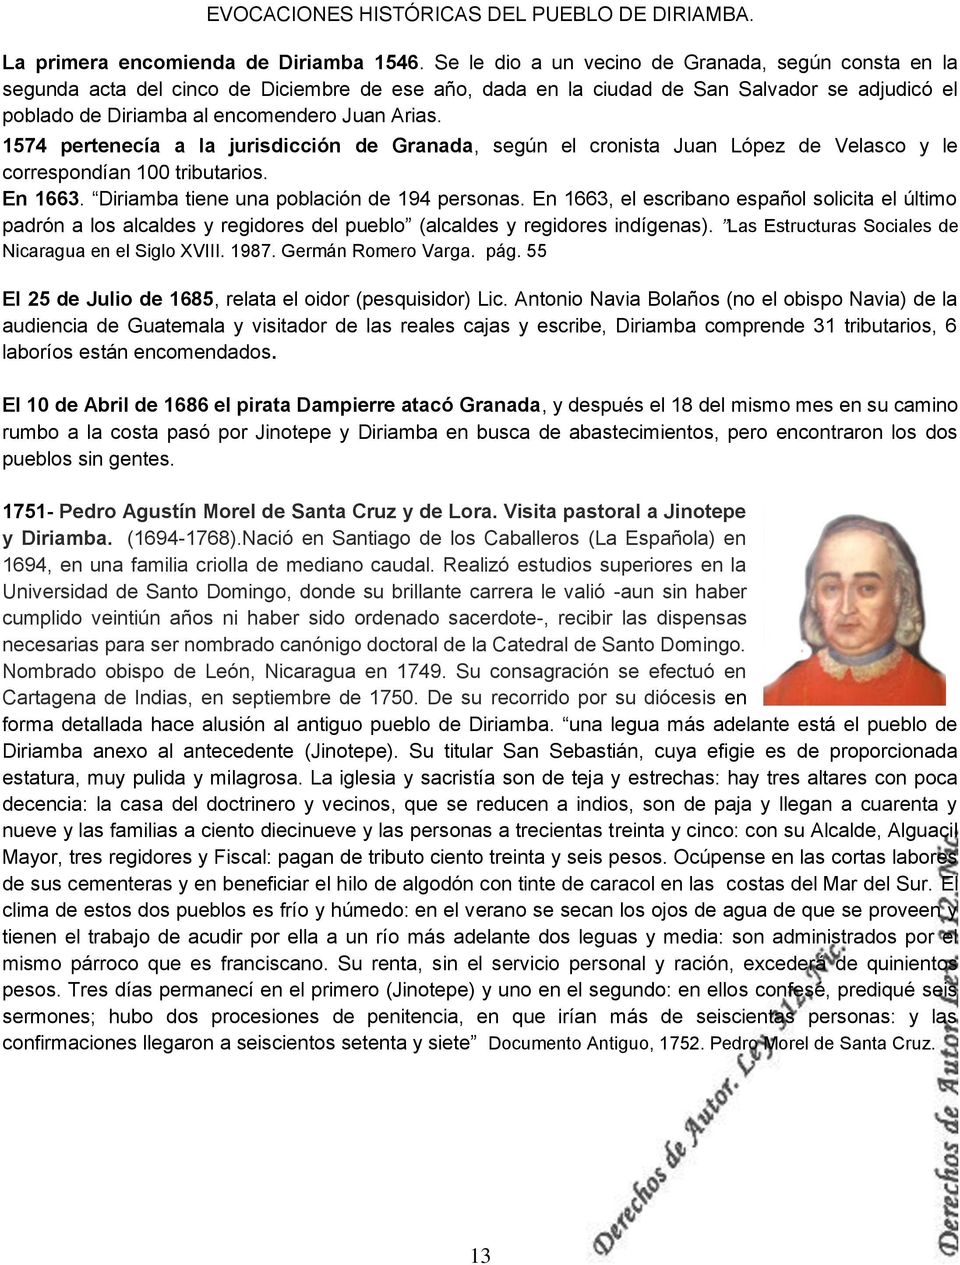 1574 pertenecía a la jurisdicción de Granada, según el cronista Juan López de Velasco y le correspondían 100 tributarios. En 1663. Diriamba tiene una población de 194 personas.